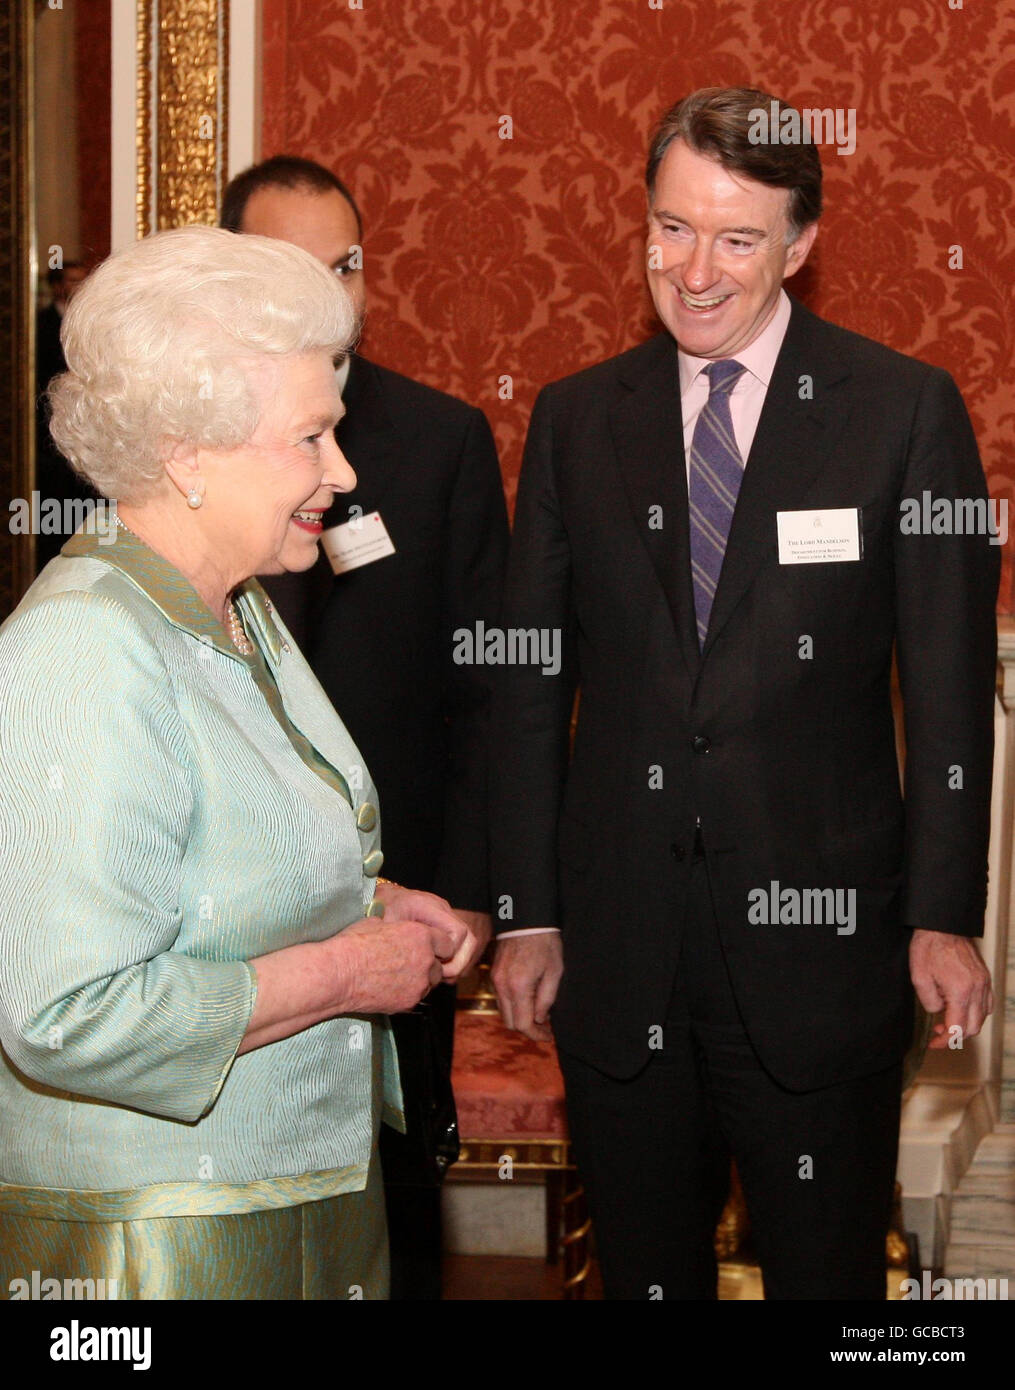 Königin Elizabeth II. Spricht mit Wirtschaftsminister Lord Mandelson bei einem Empfang im Buckingham Palace, London, der im Vorfeld des Staatsbesuchs des Präsidenten Südafrikas im nächsten Monat stattfindet. Stockfoto